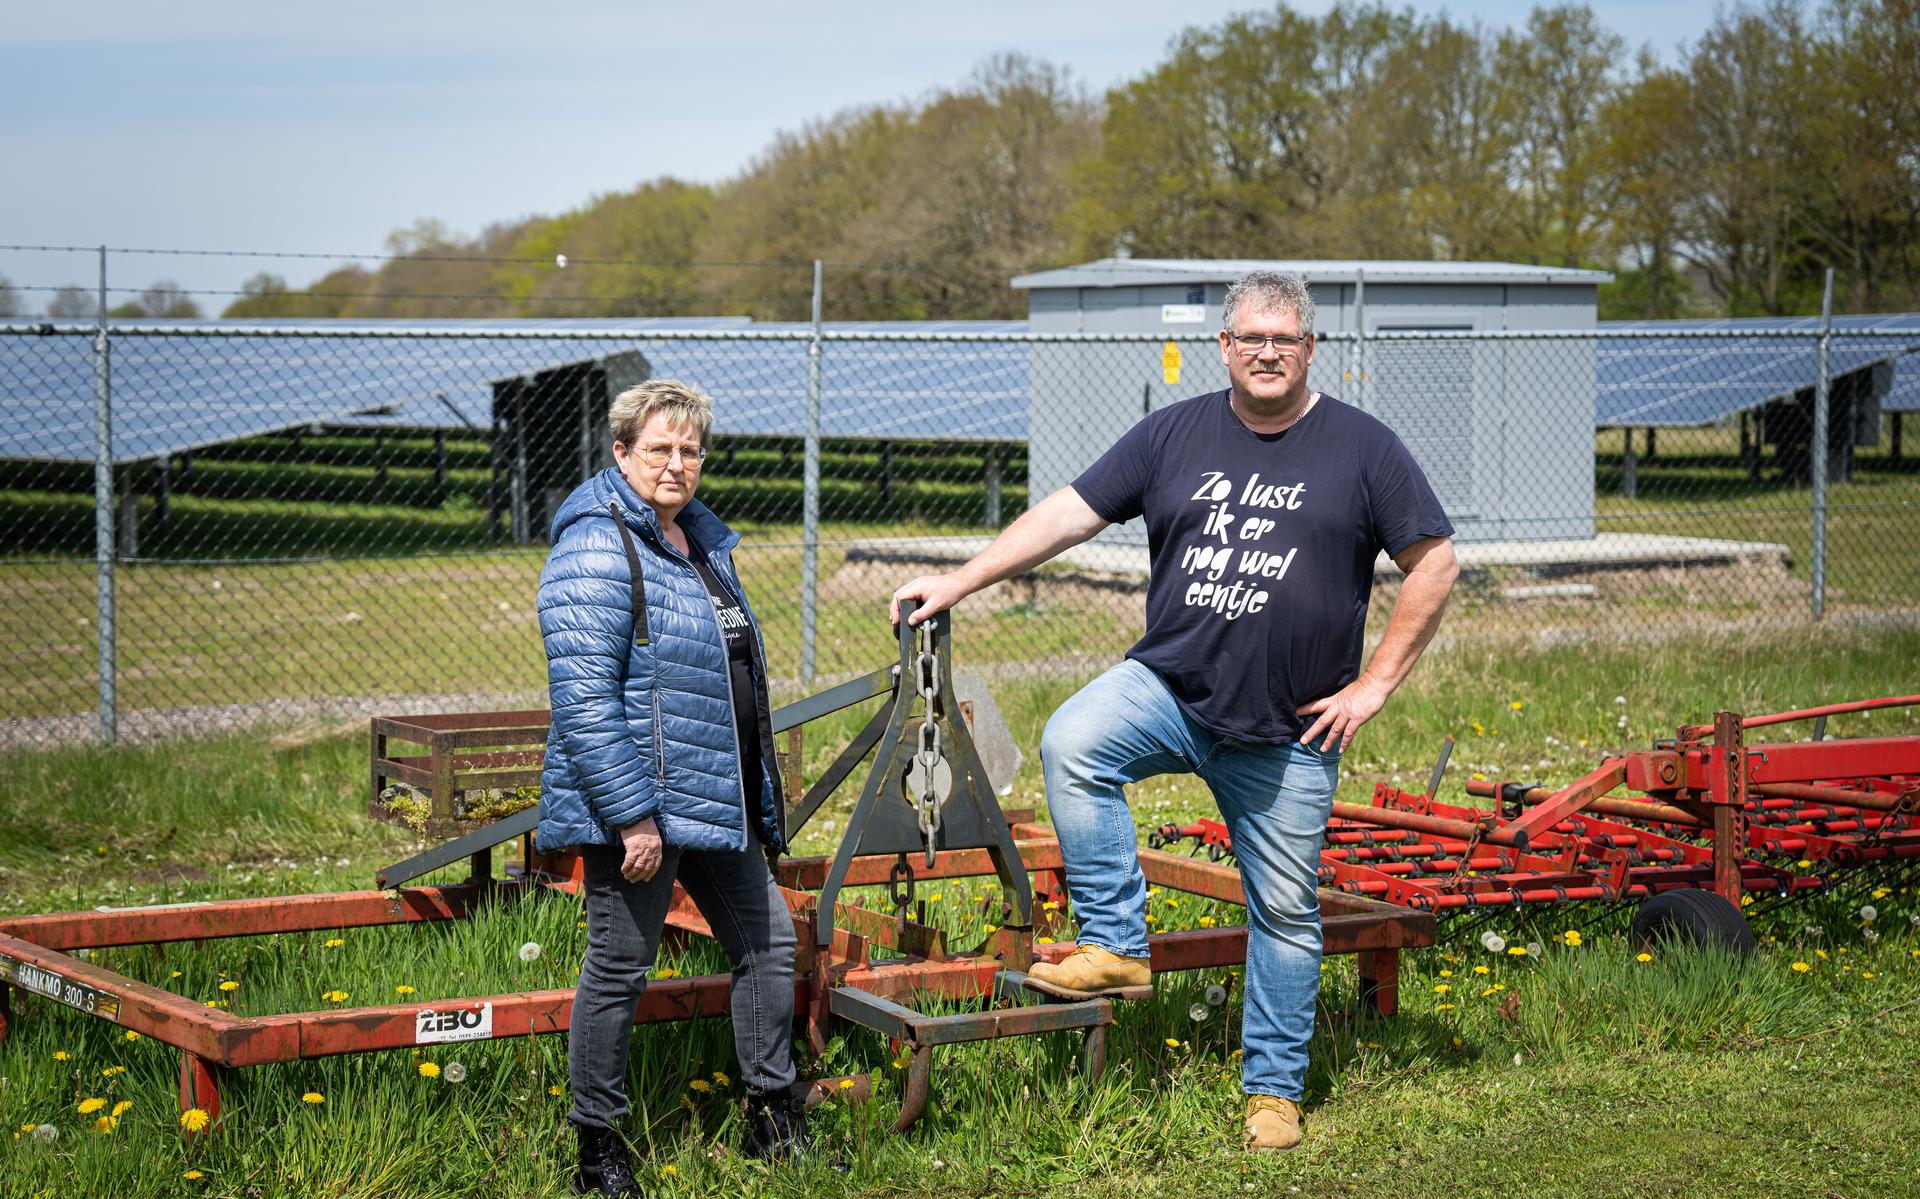 Janneke en Roelof Ebbing uit wonen naast een zonnepark. Ze hebben overlast van de transformatoren die vooral met goed weer veel geluid maken.